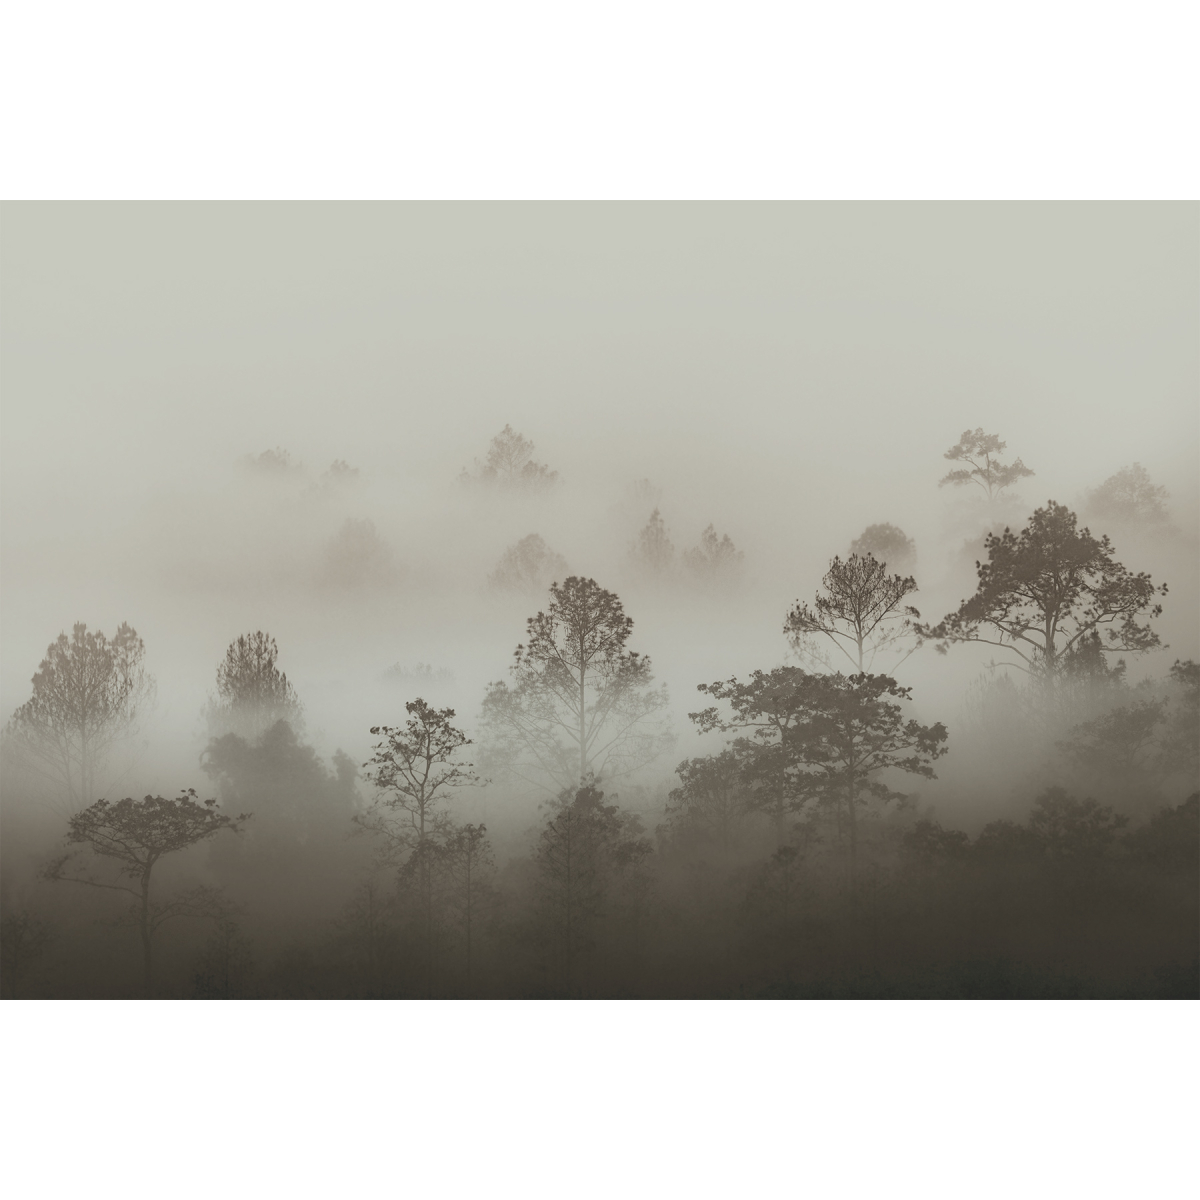 Papel pintado Nieblas matinales panorámicas | Tamaño L | (francés) Acte-Deco